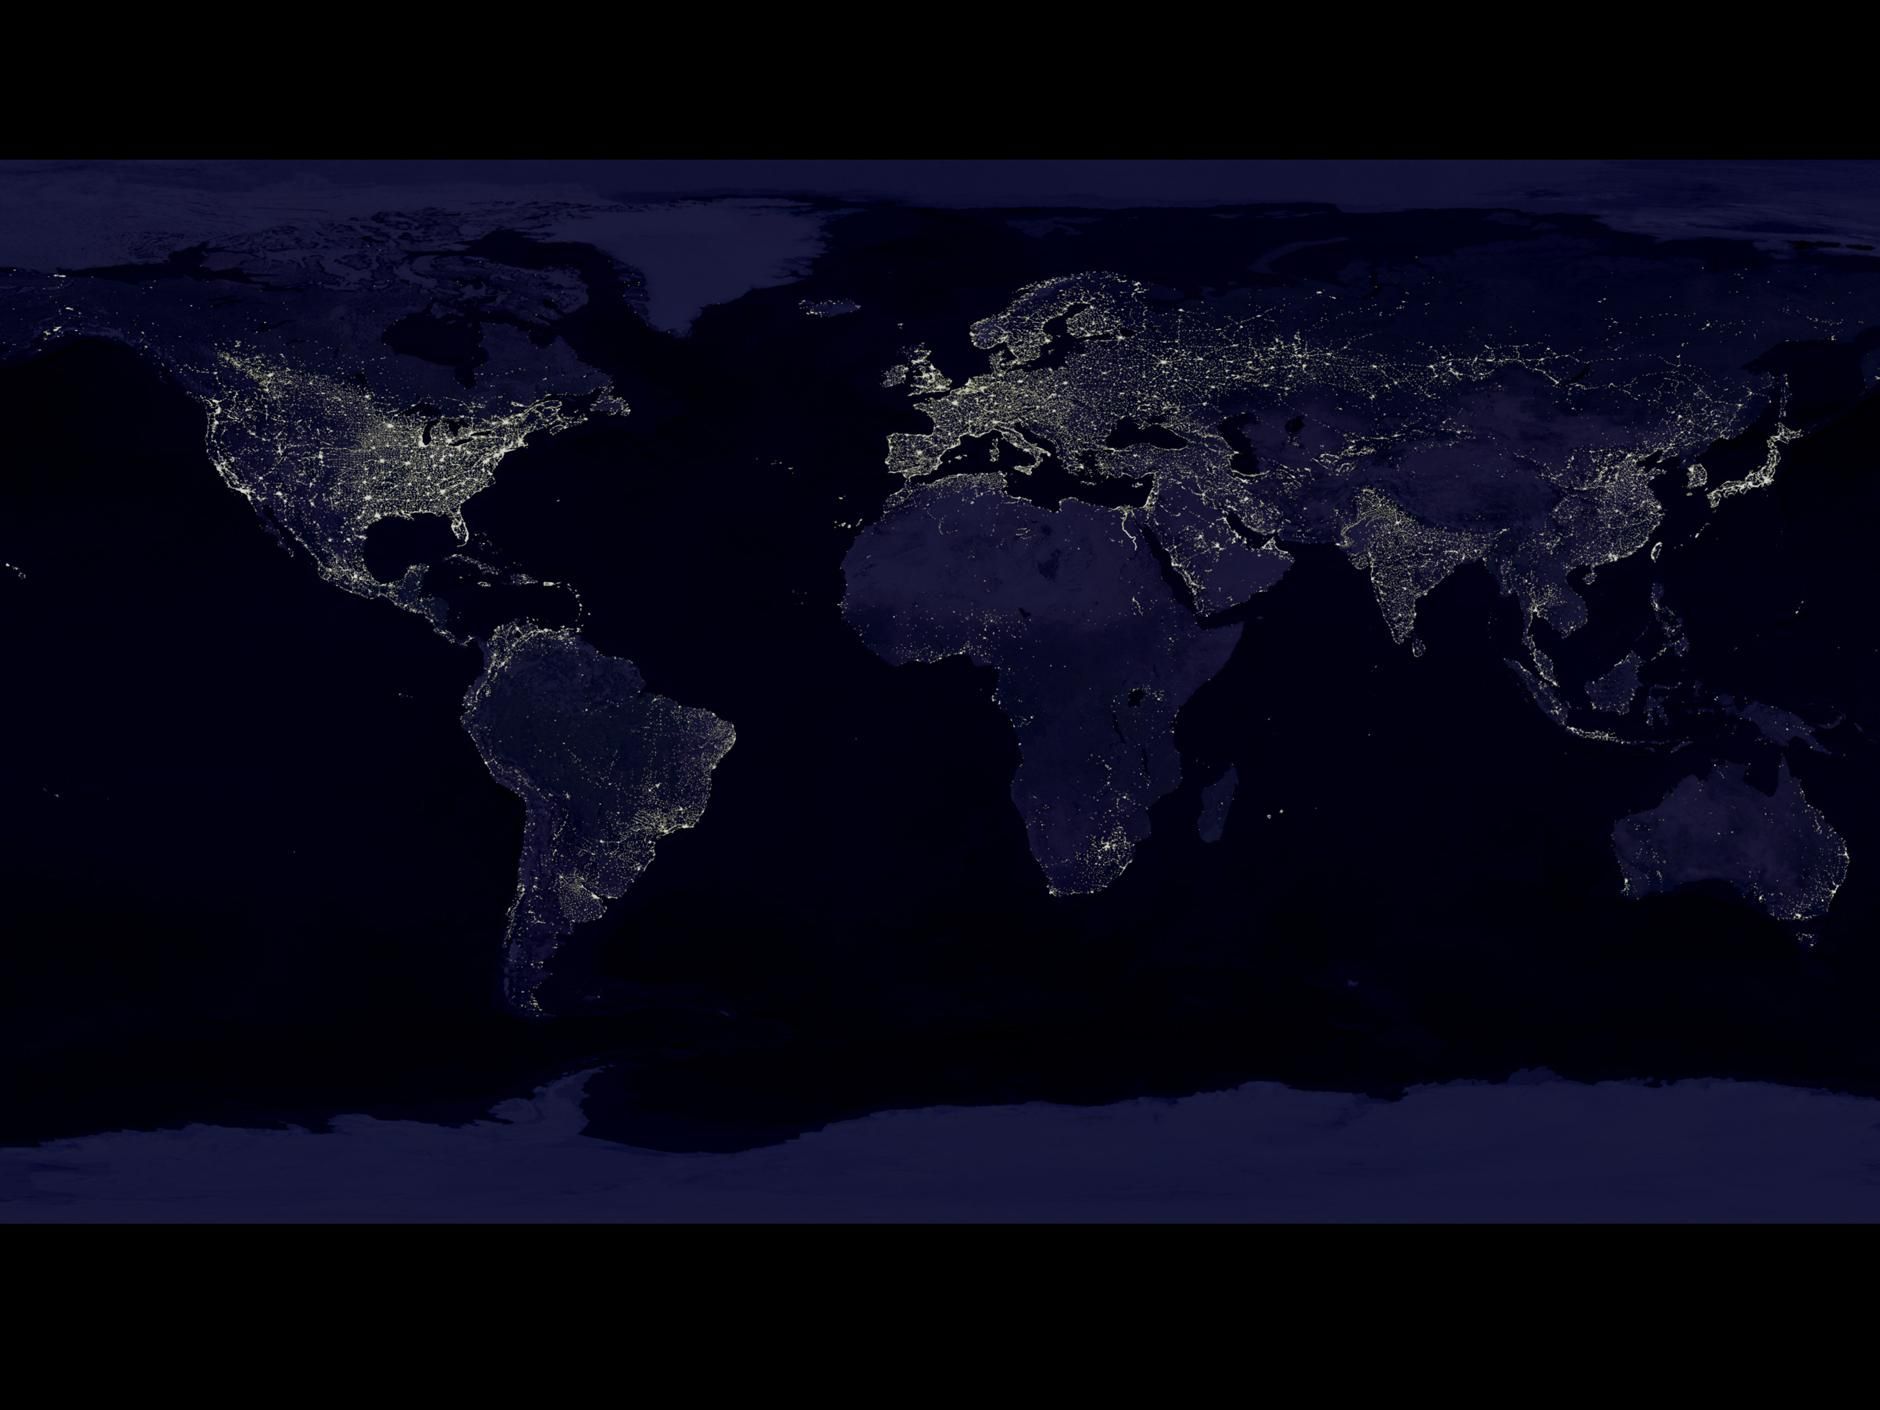 Earth at Night - NASA Science